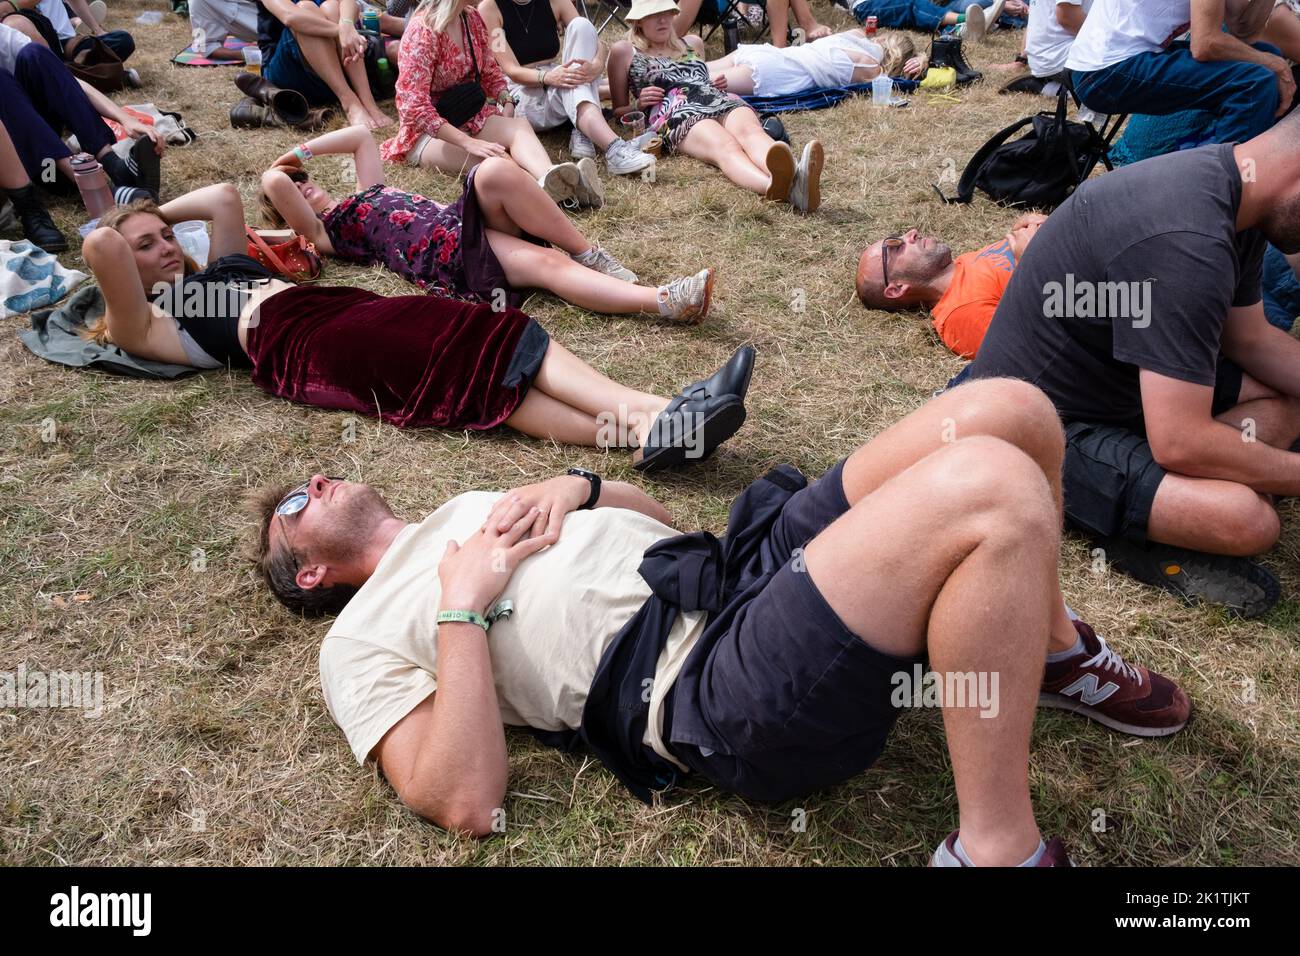 È il momento di prenderlo facilmente e riposarsi nella folla del festival al festival musicale Green Man 2022 in Galles, Regno Unito. Fotografia: Rob Watkins/Alamy Foto Stock